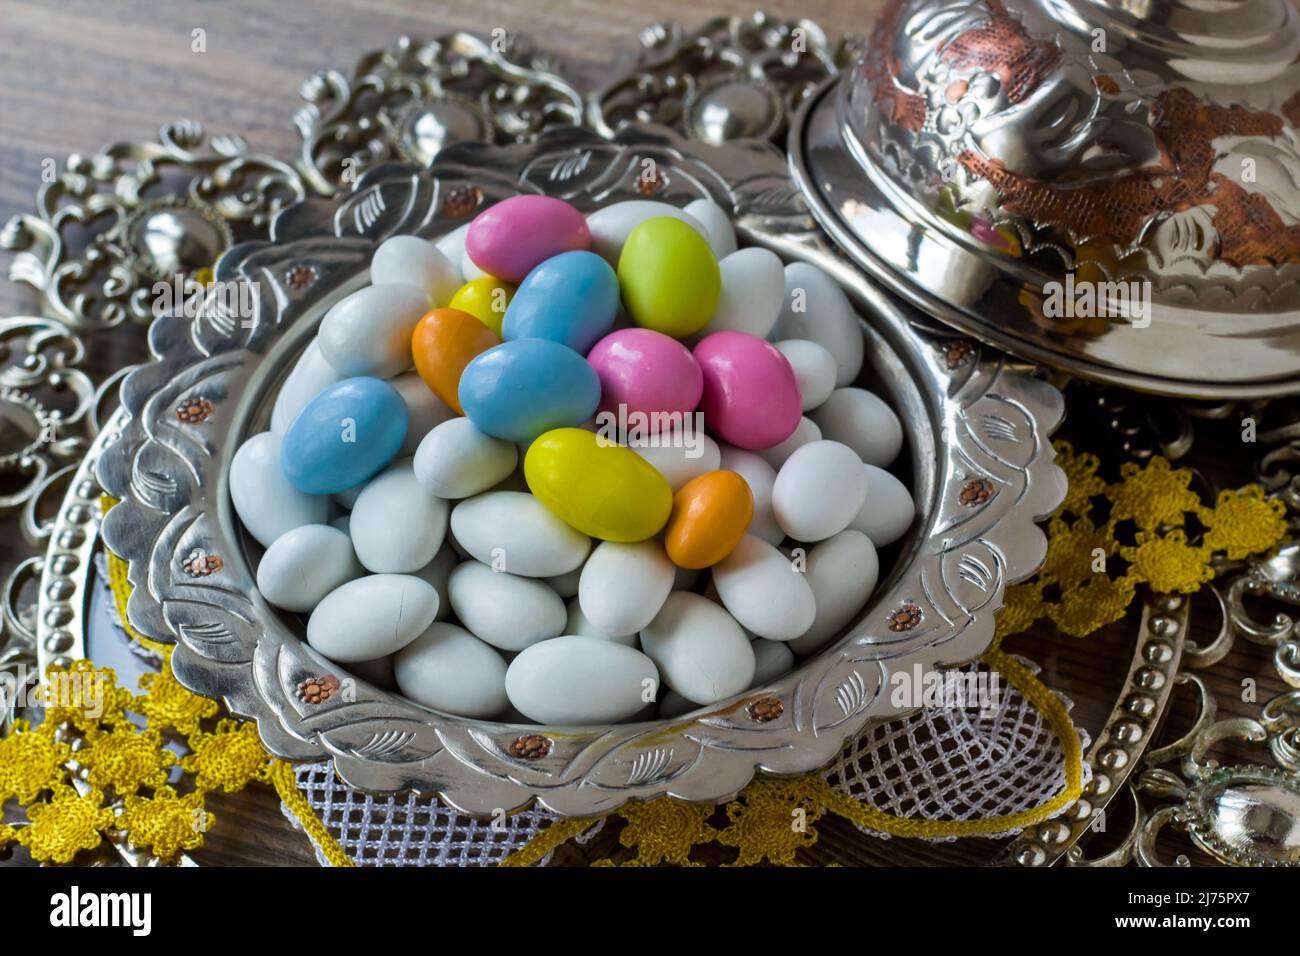 Tons traditionnels, blancs et pastel, bonbons aux amandes enrobés de chocolat dans un bol rétro argenté, sur une surface en bois Banque D'Images